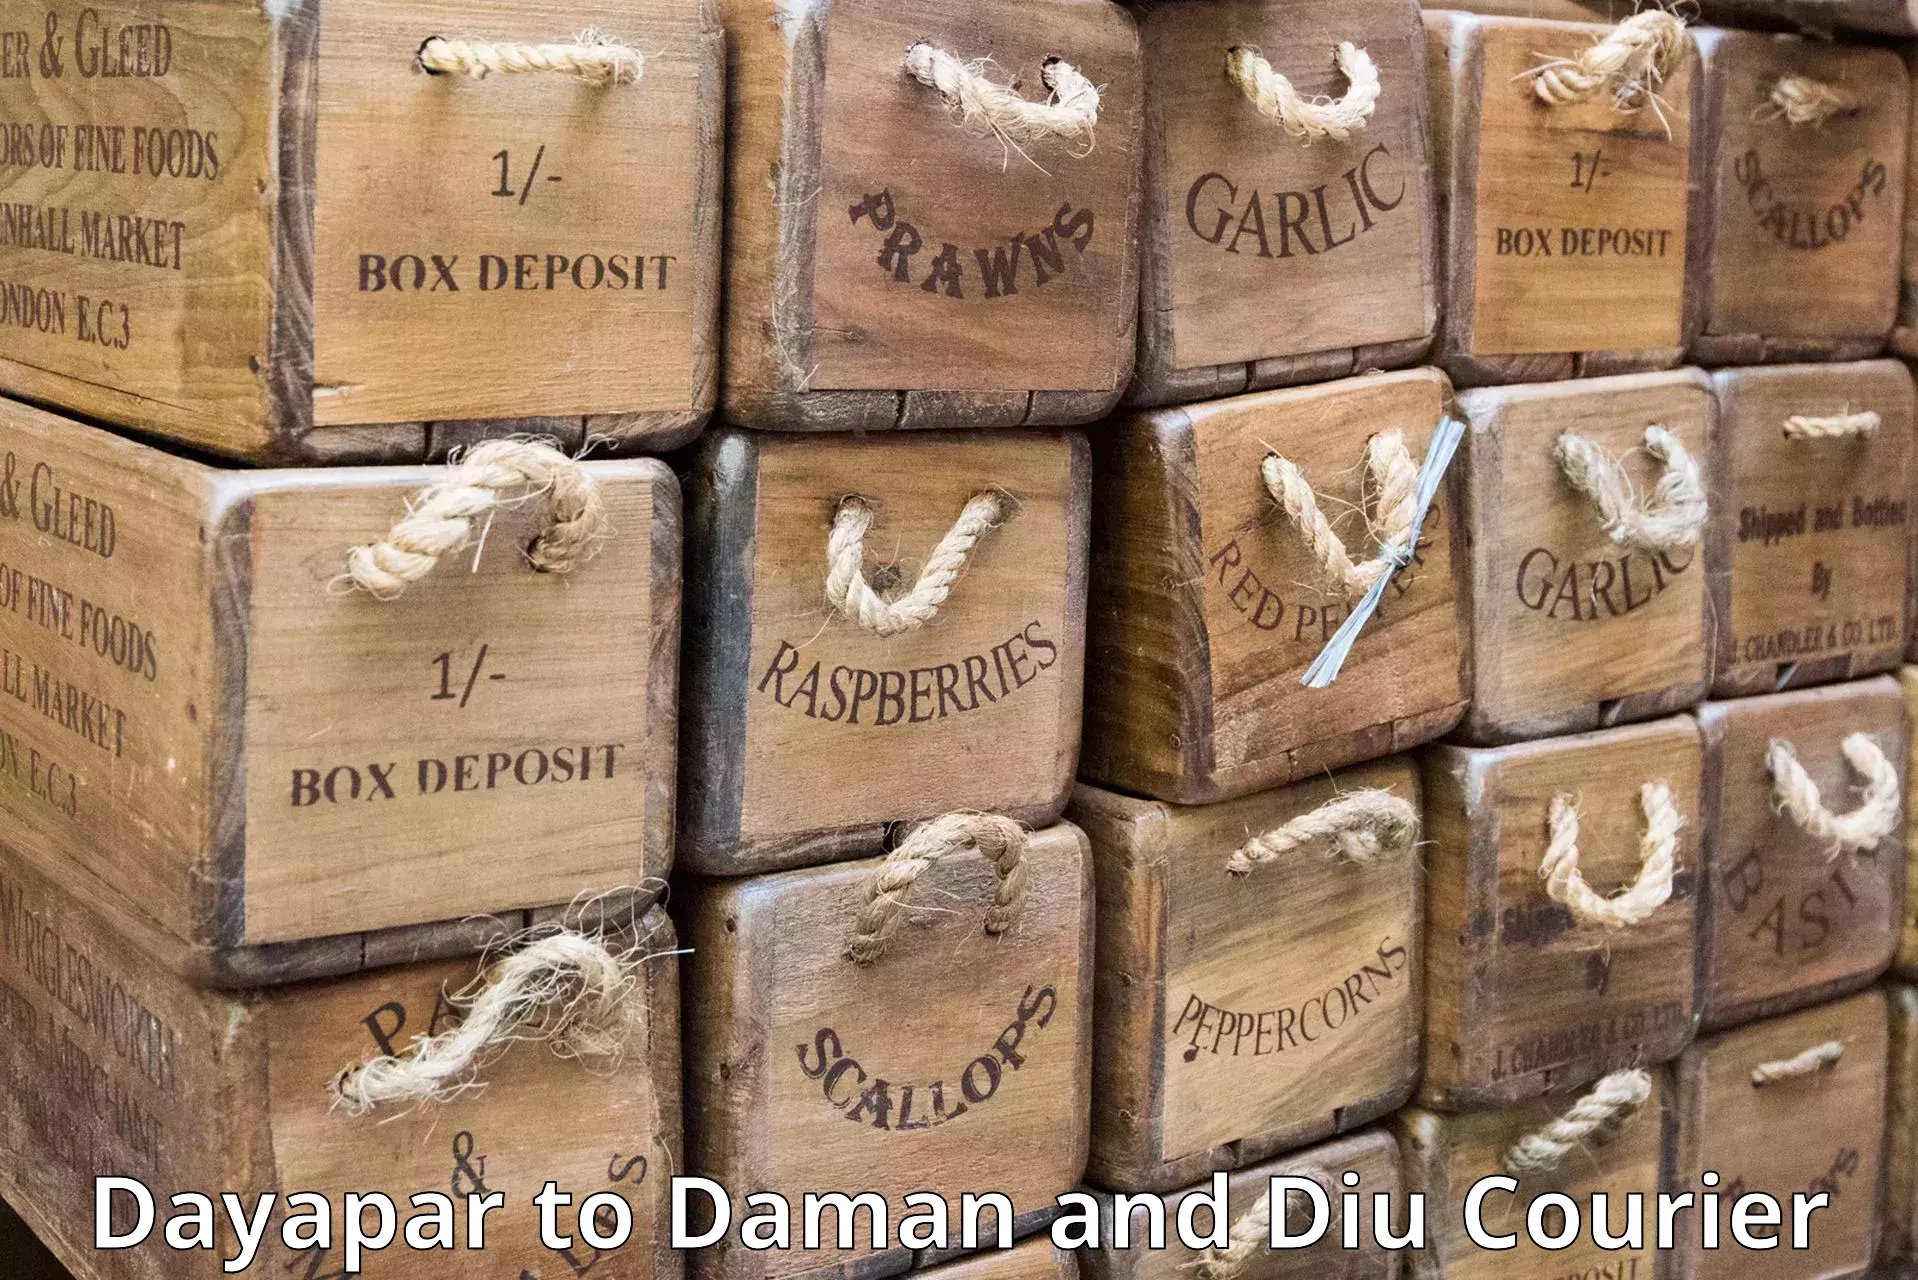 Bulk shipment Dayapar to Daman and Diu